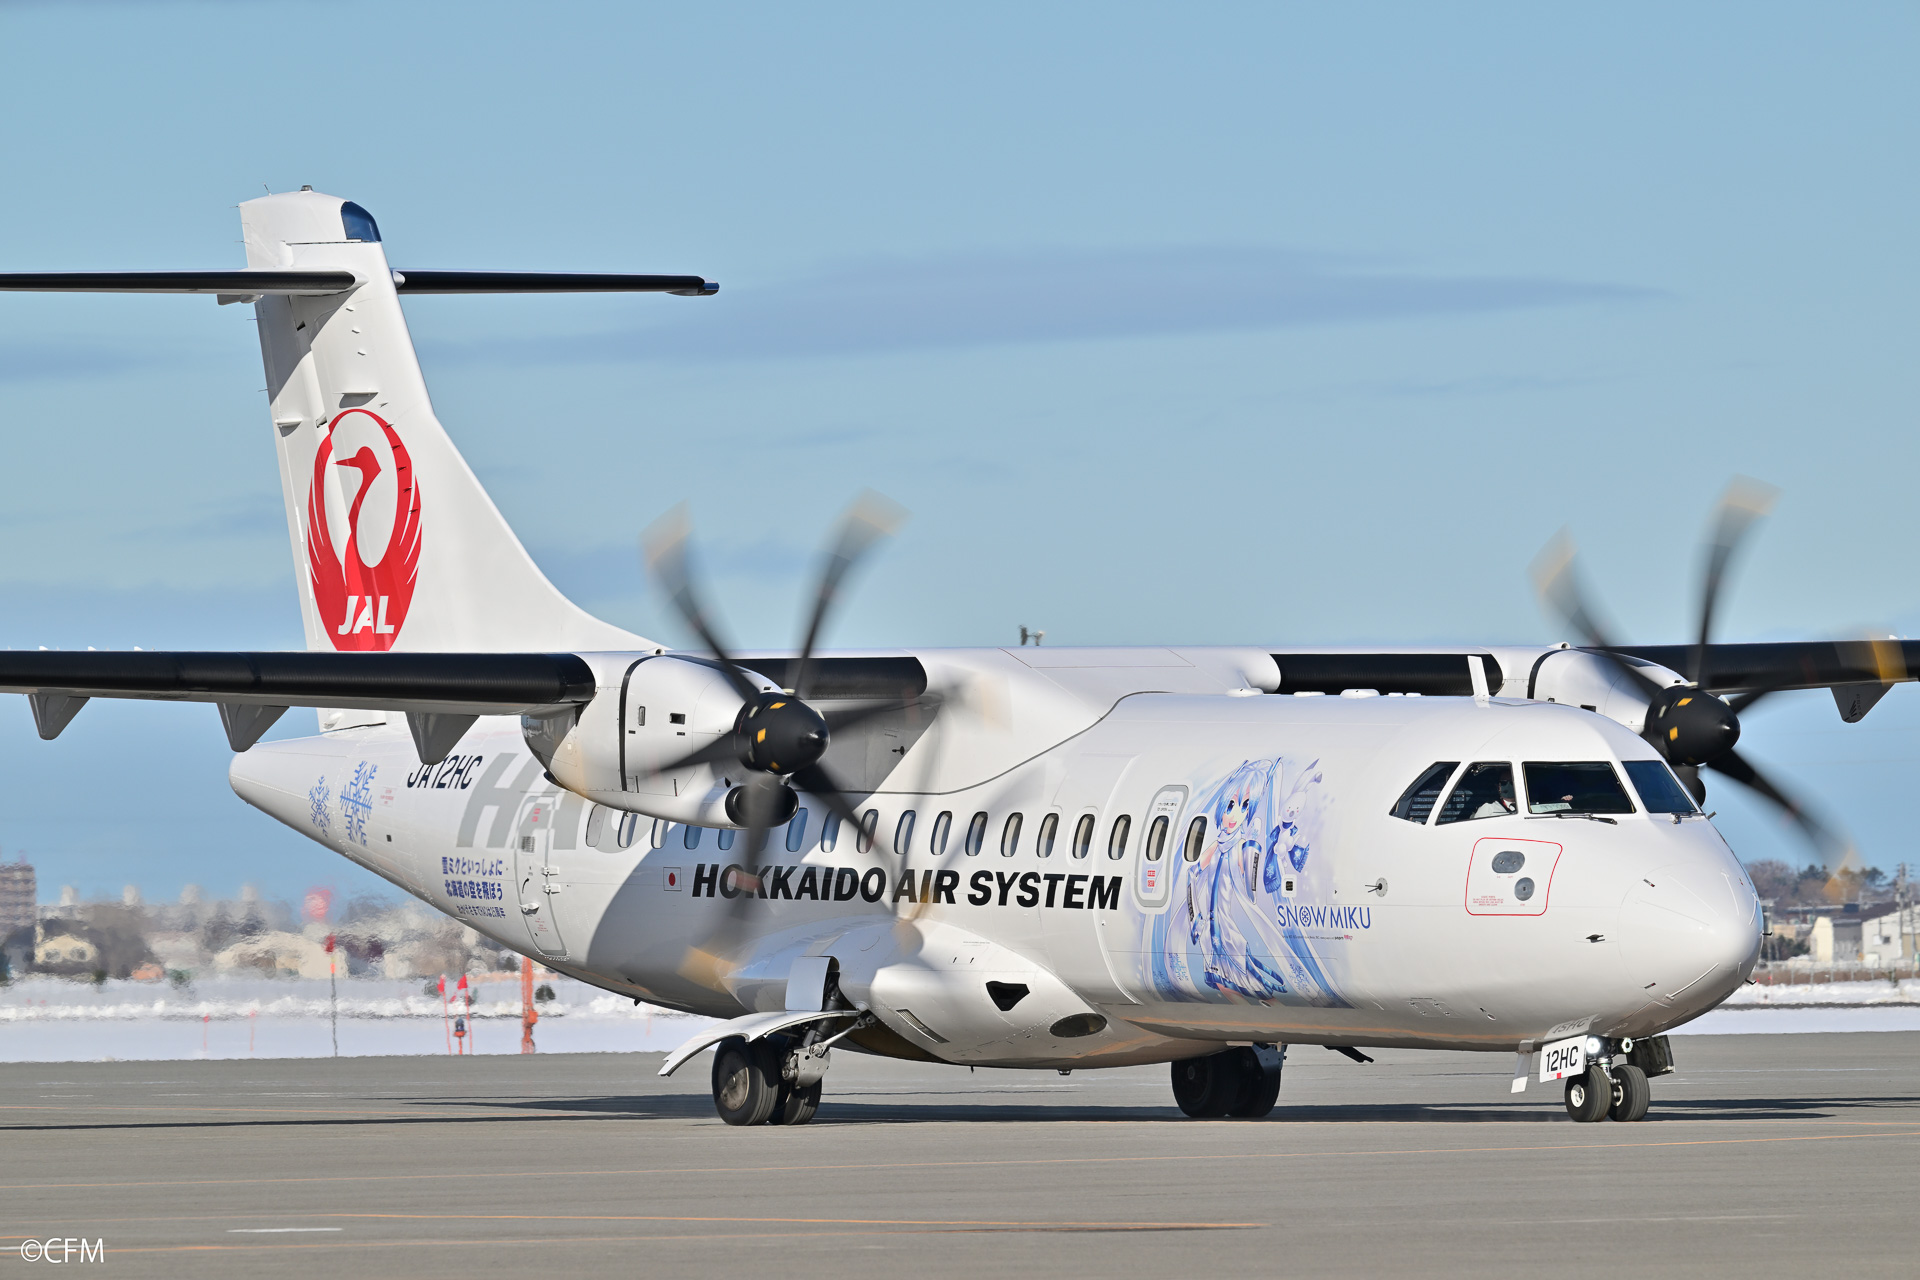 雪ミク×北海道エアシステム、就航7空港を巡るスタンプラリー。7